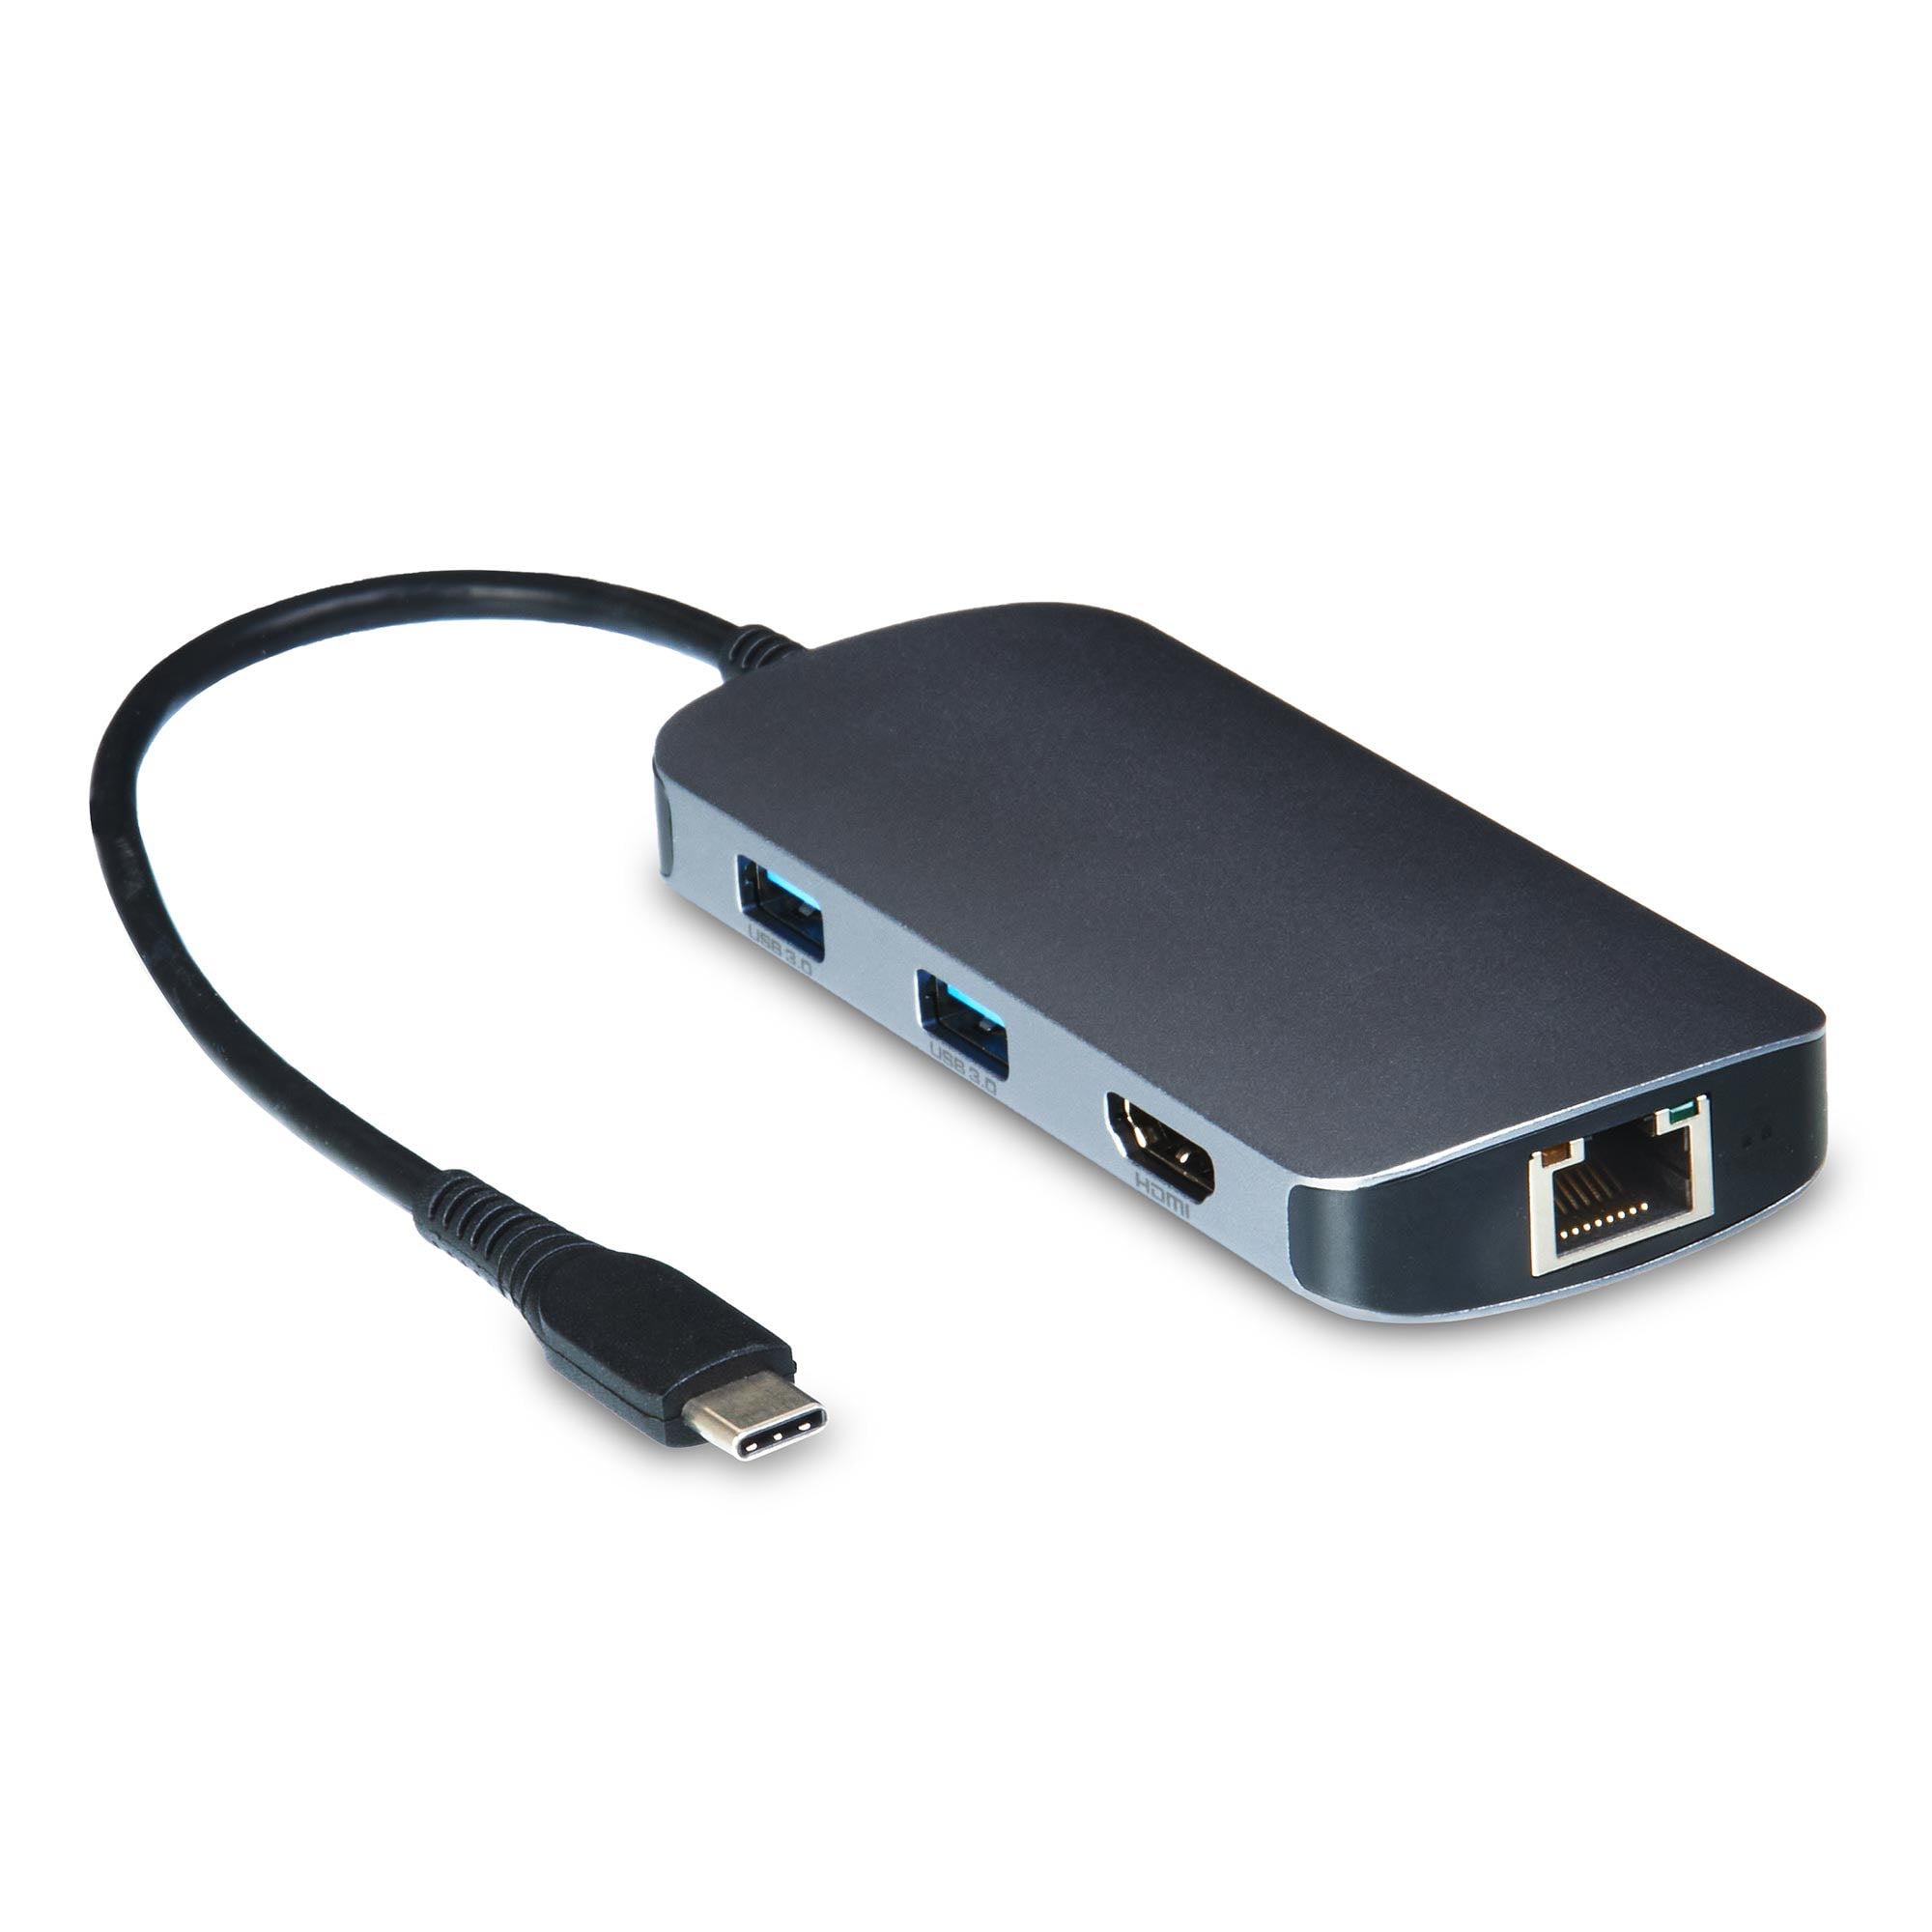 onn. Multi-Port USB Hub with SD and microSD Card Reader 